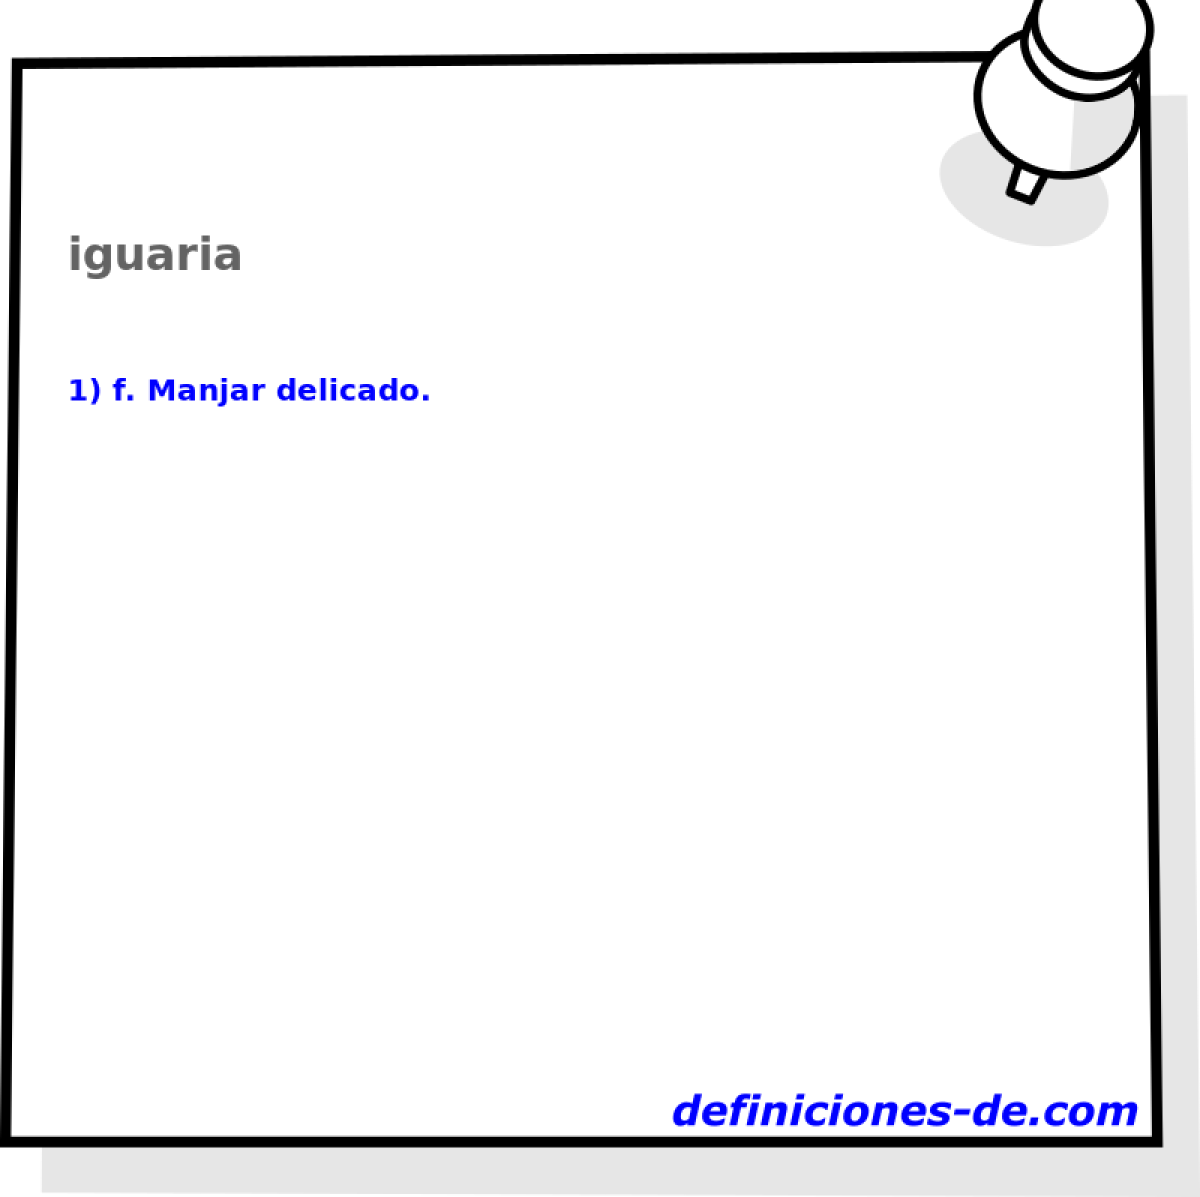 iguaria 